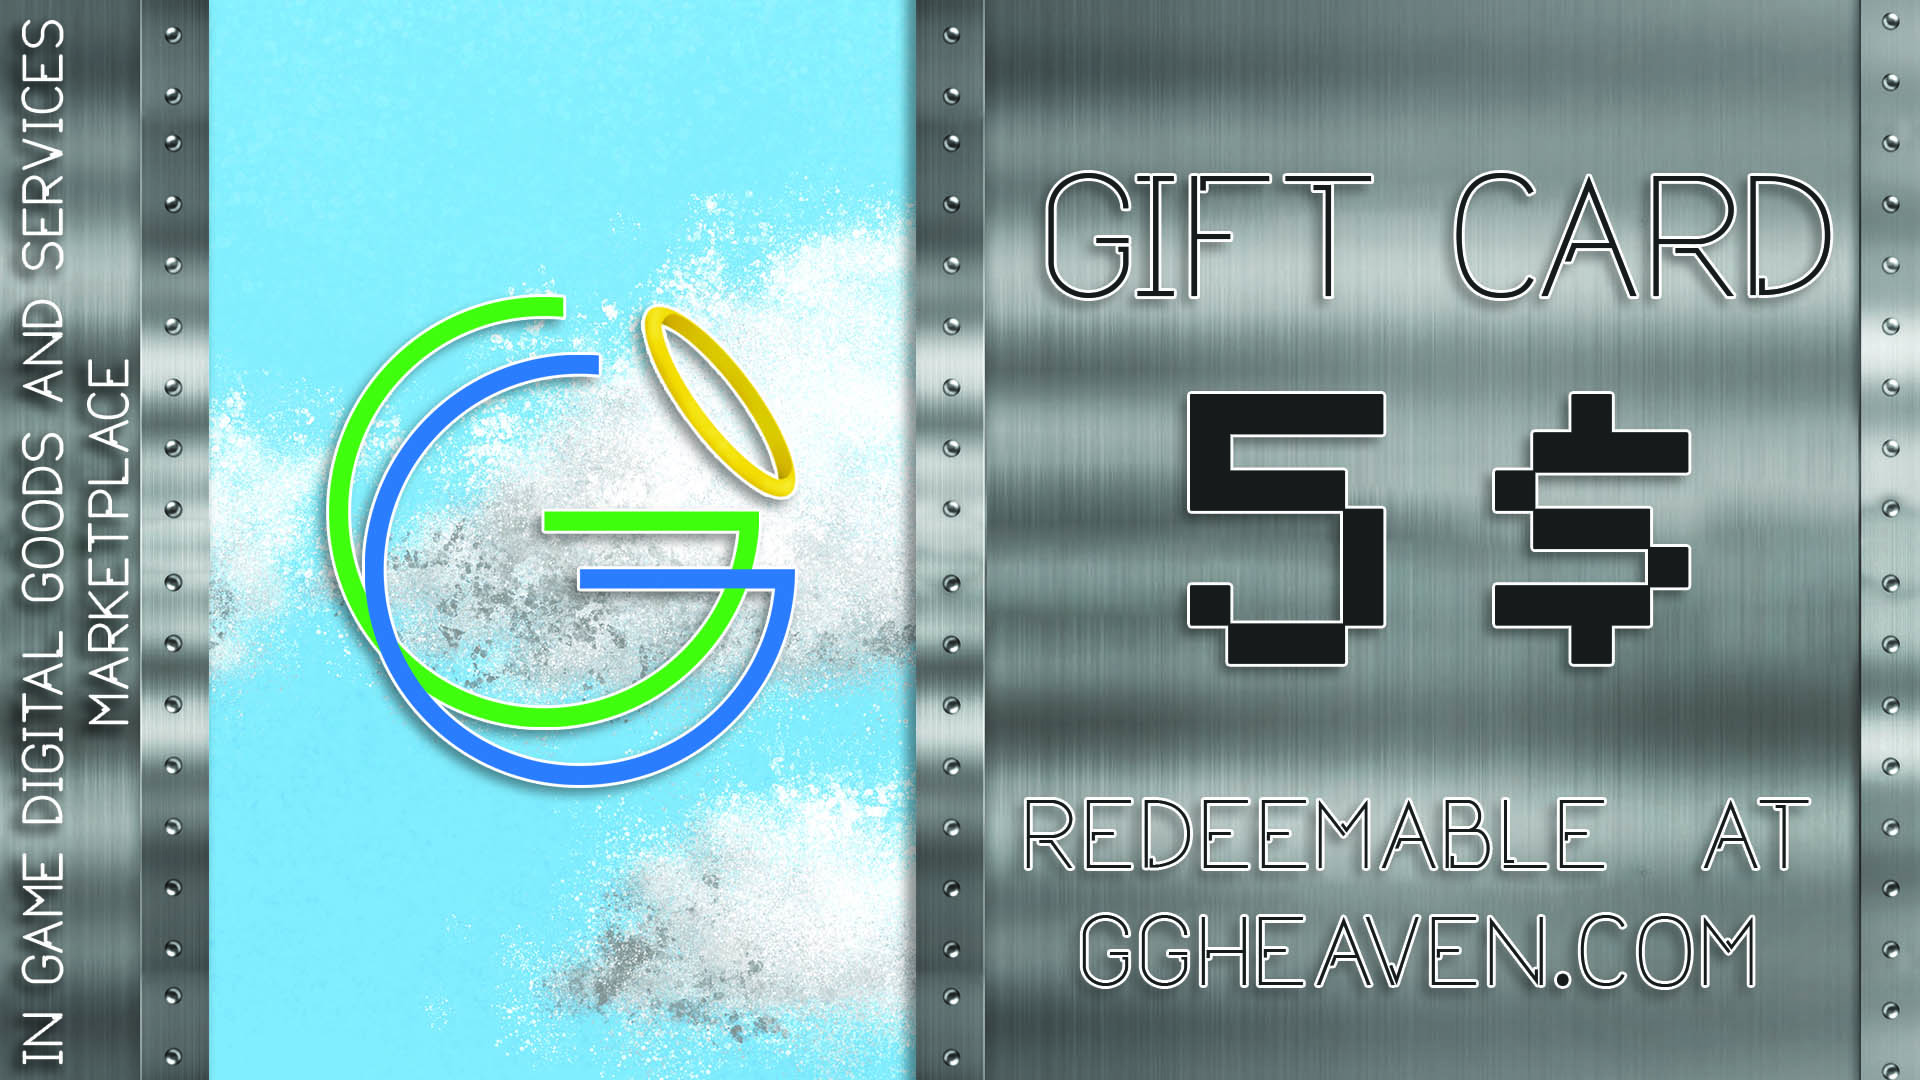 GGHeaven.com 5$ Gift Card $6.27